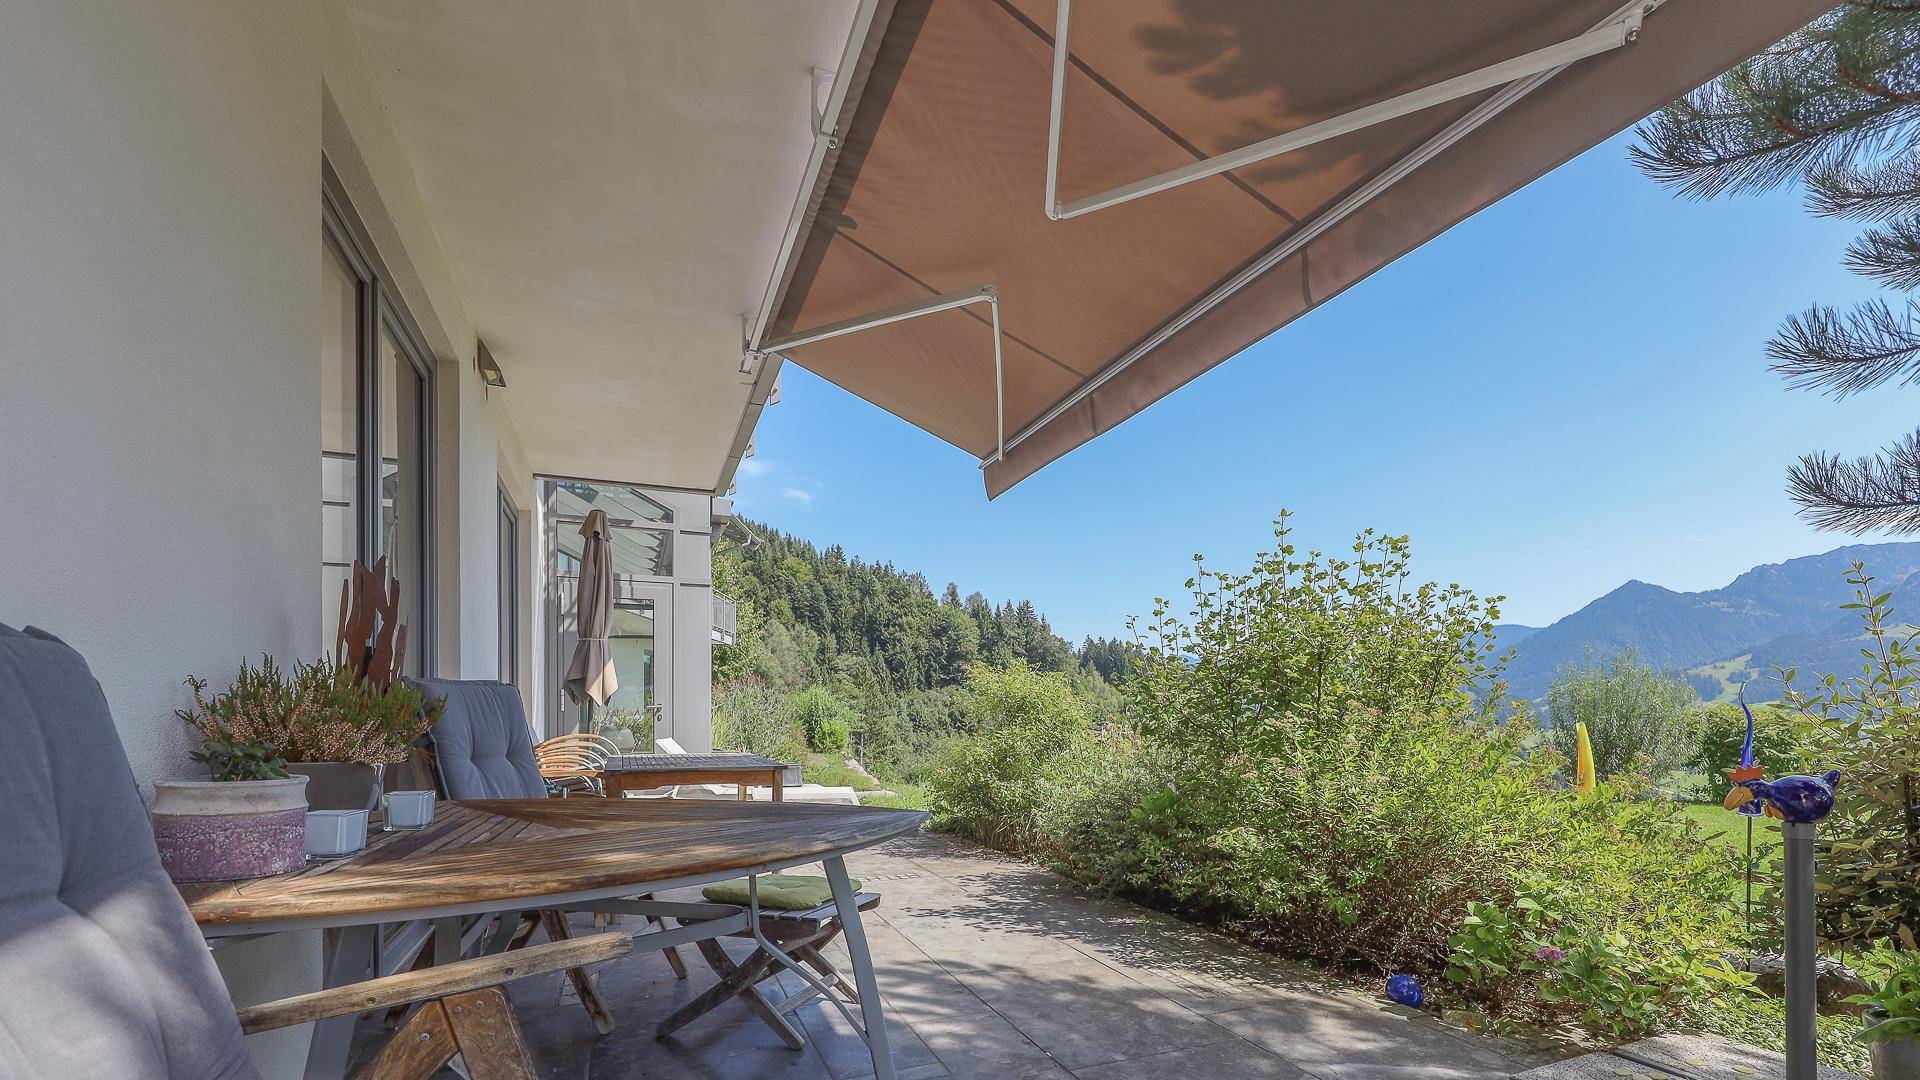 KITZIMMO-Exklusive Villa in Toplage bei Kufstein kaufen.